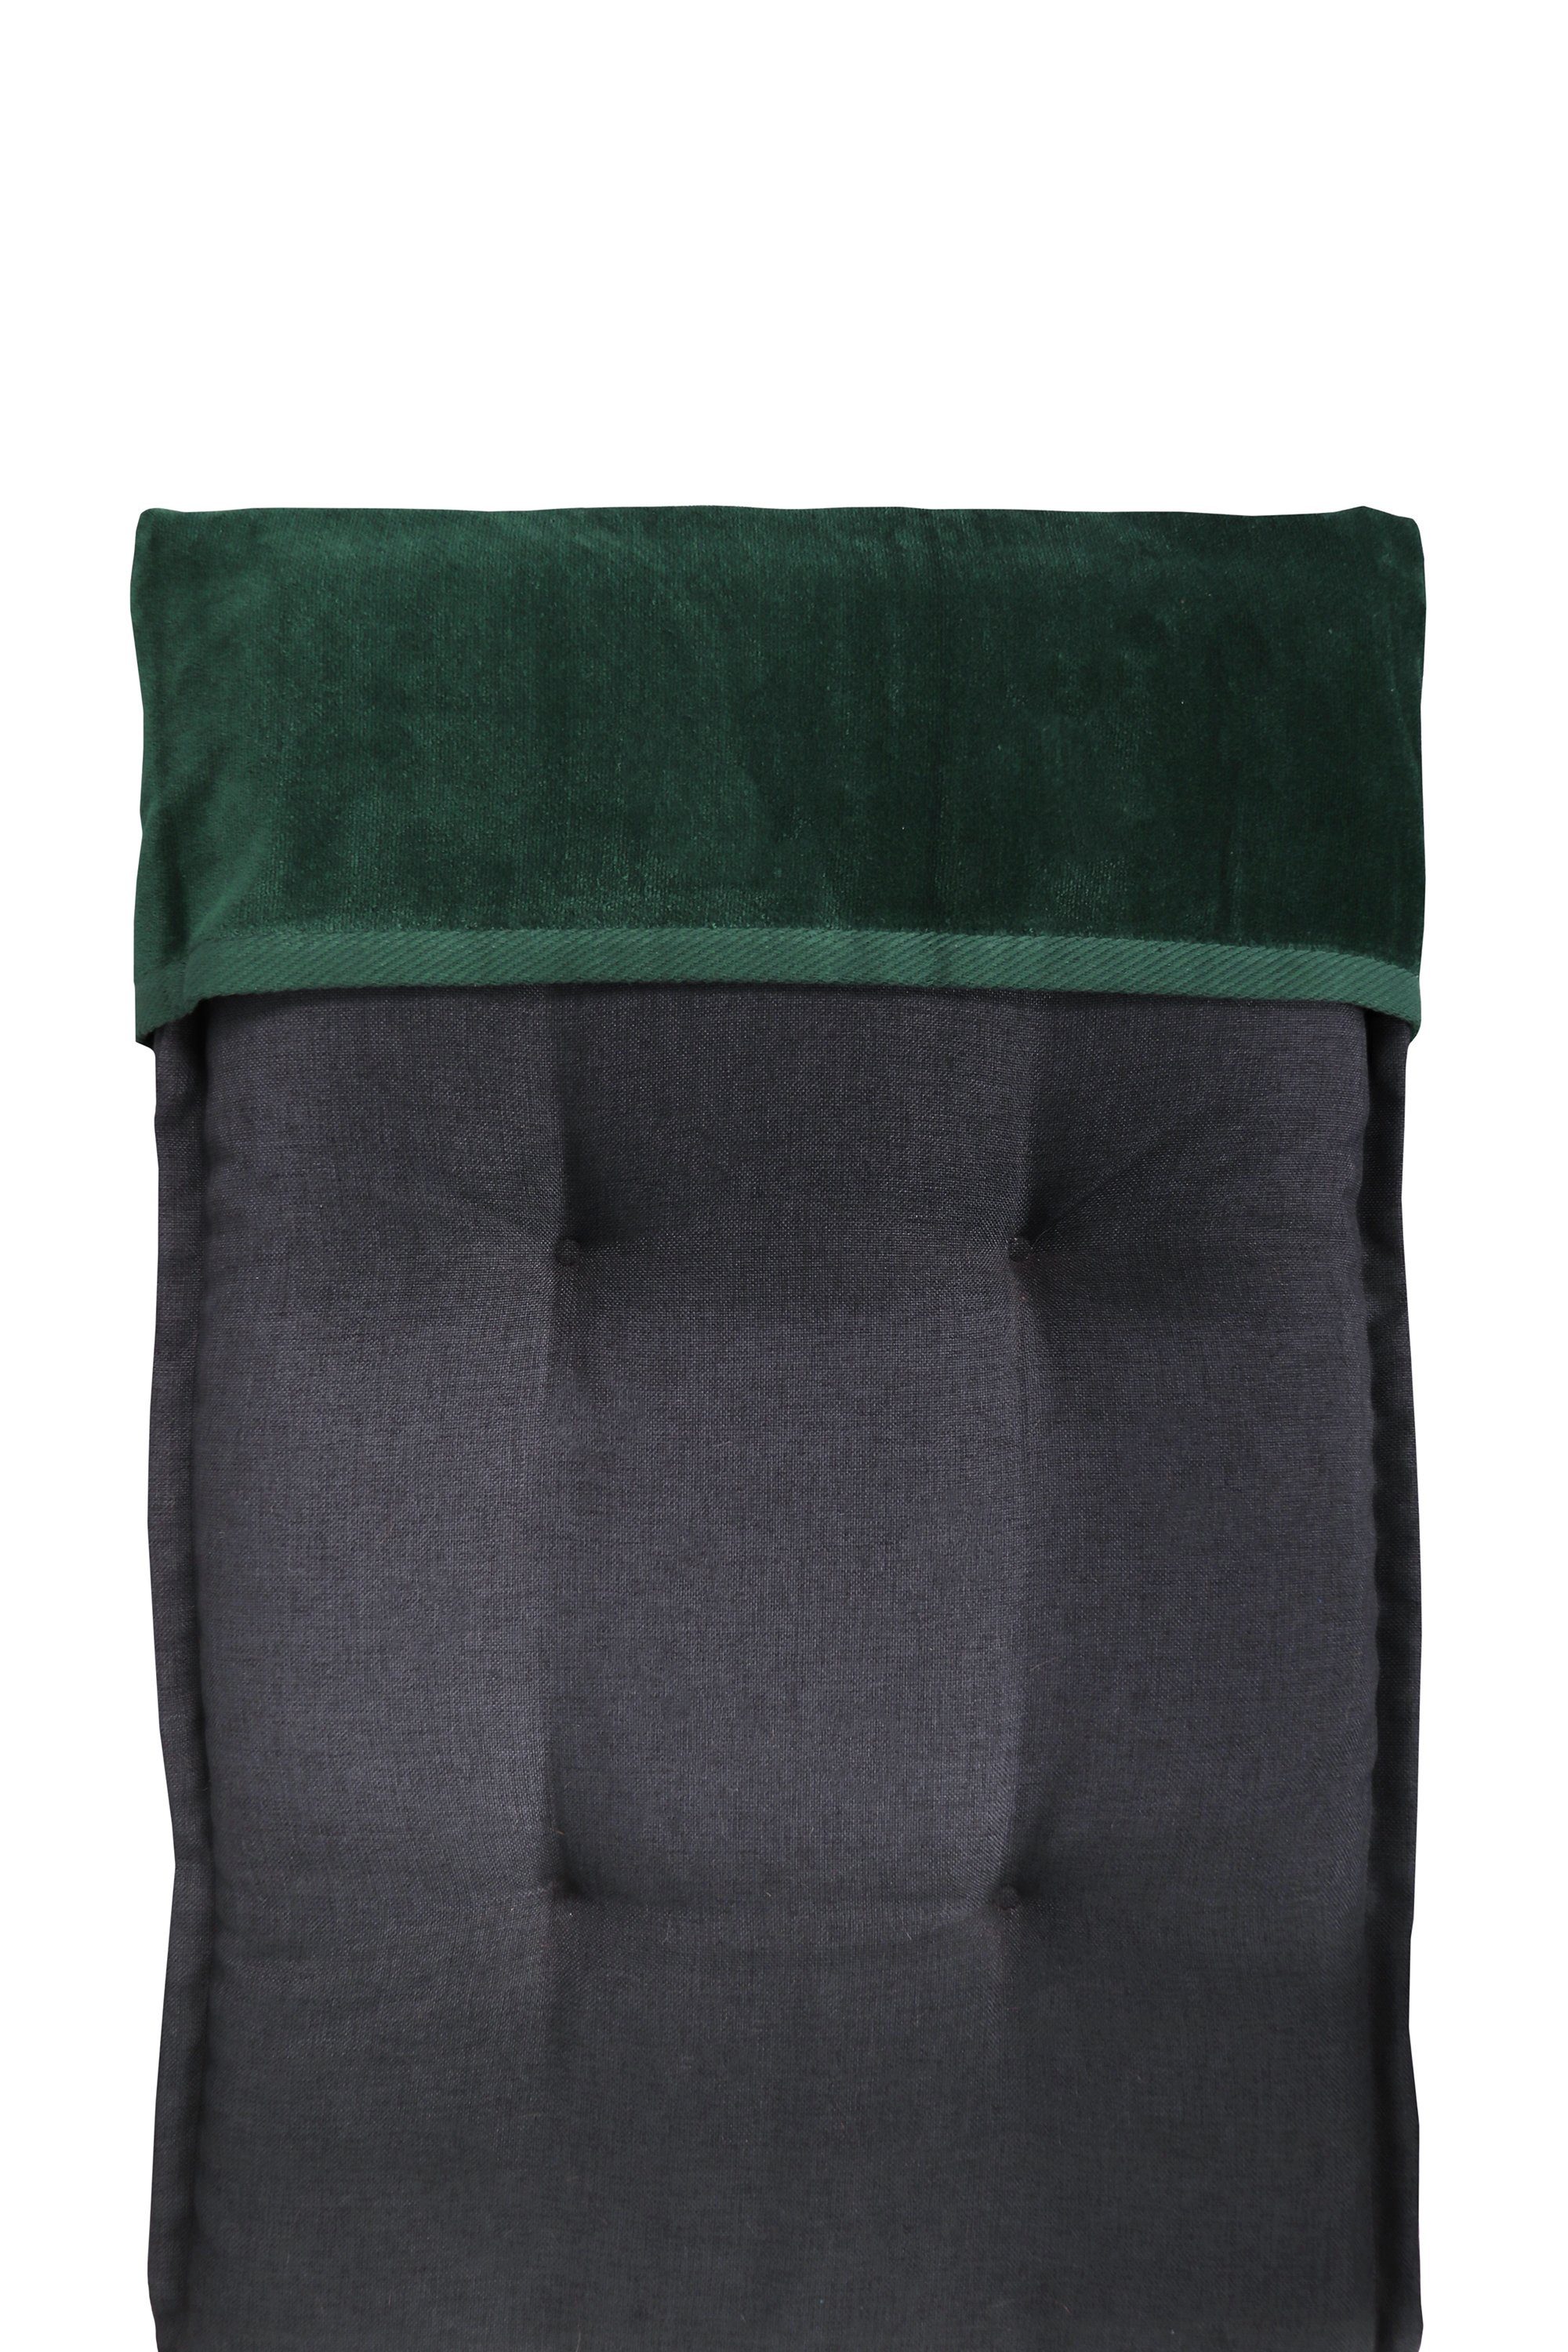 Relax, und Liegenauflage erhältlich als jilda-tex Grün Stuhlauflage Liegen-